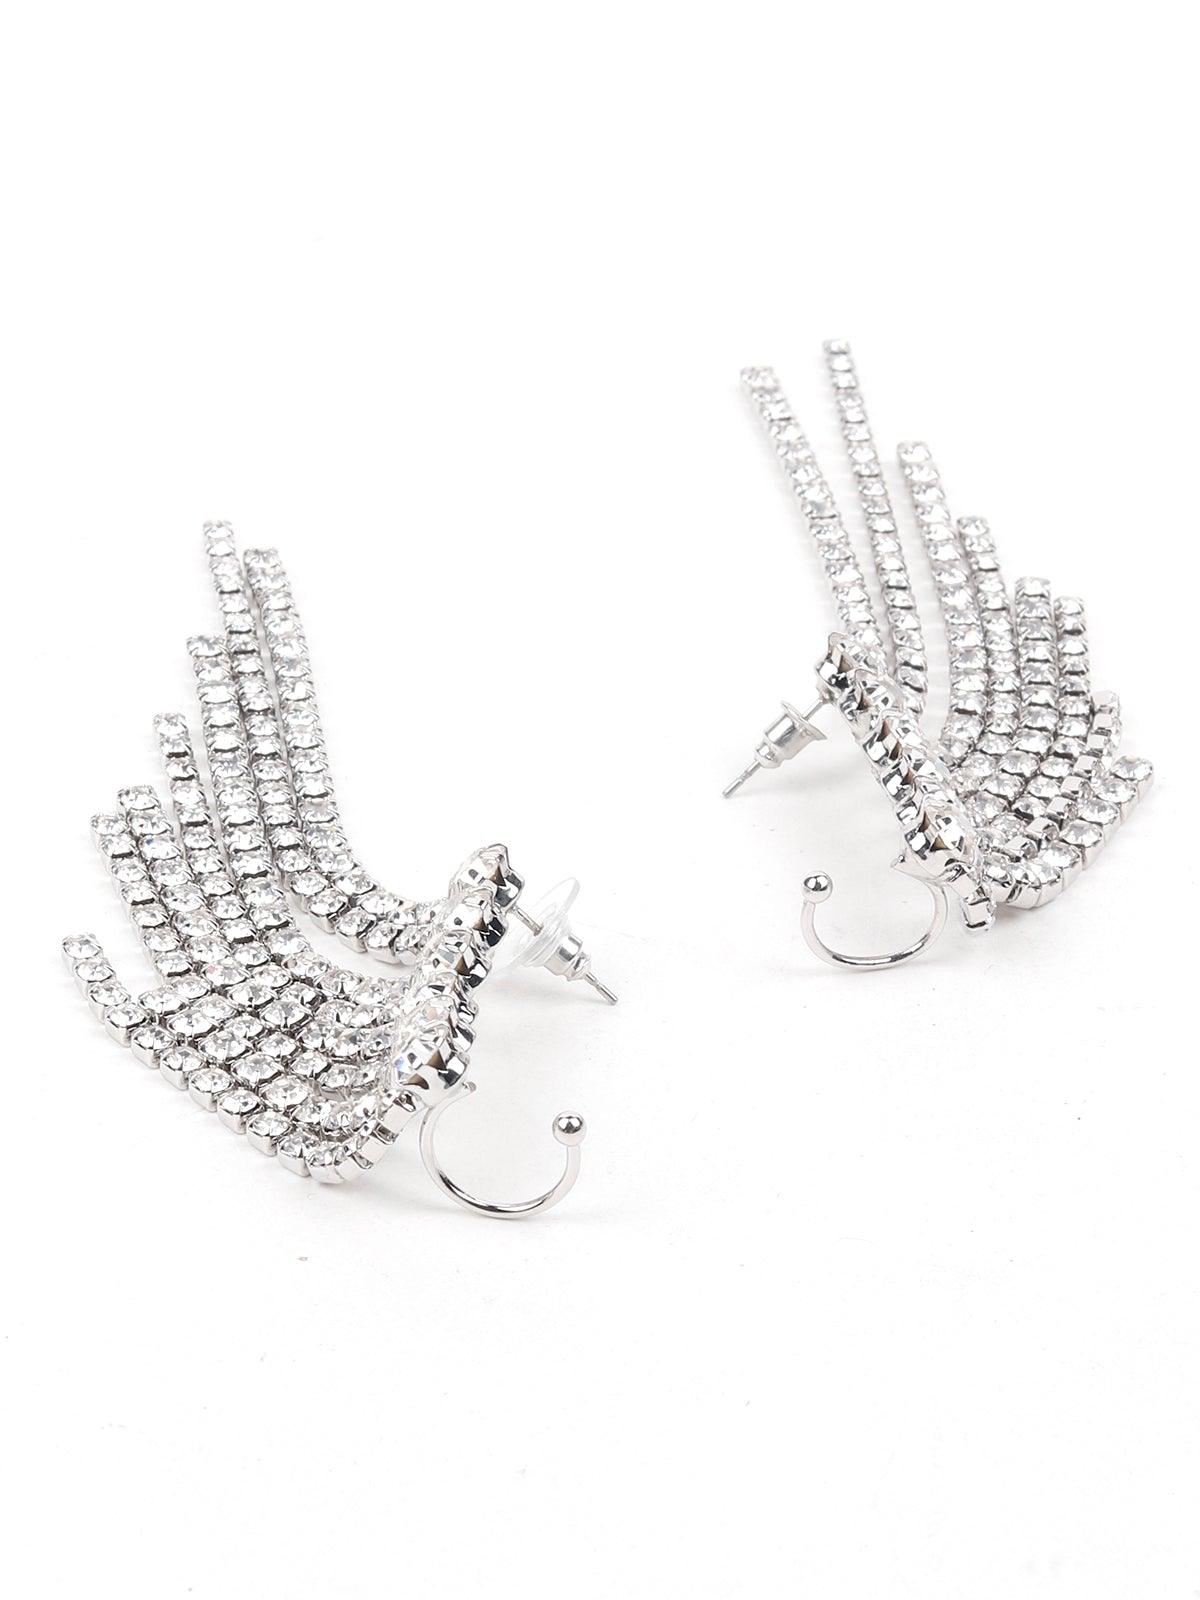 Women's Amazing Crystal Studded Statement Earrings - Odette